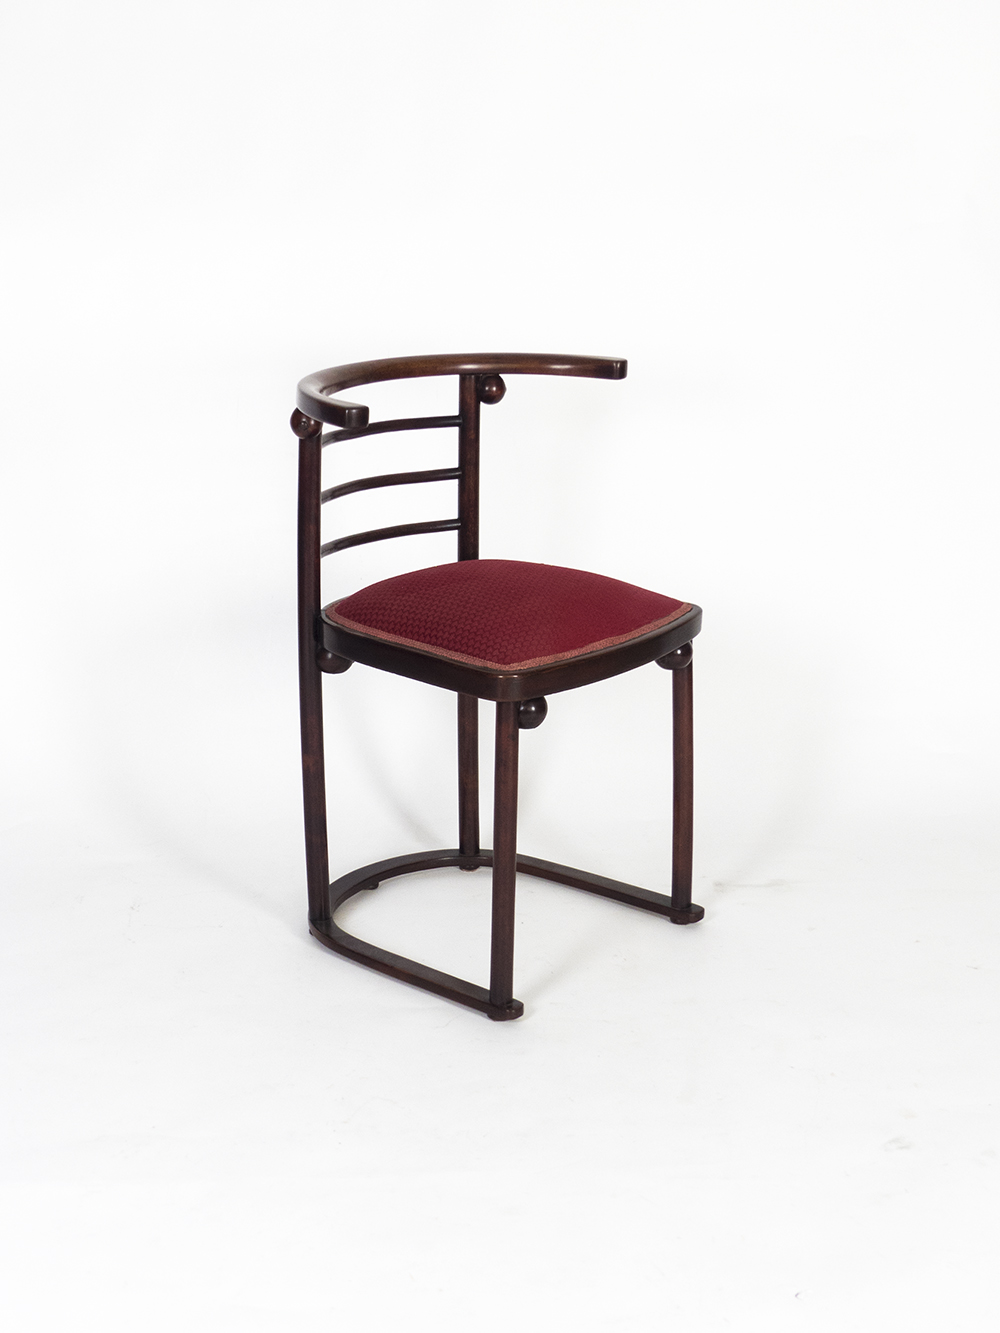 Mod. 728 “Fledermaus” chair for Gustav gallery 1+1 Hoffman | & by Siegel J Kohn Joef design J 